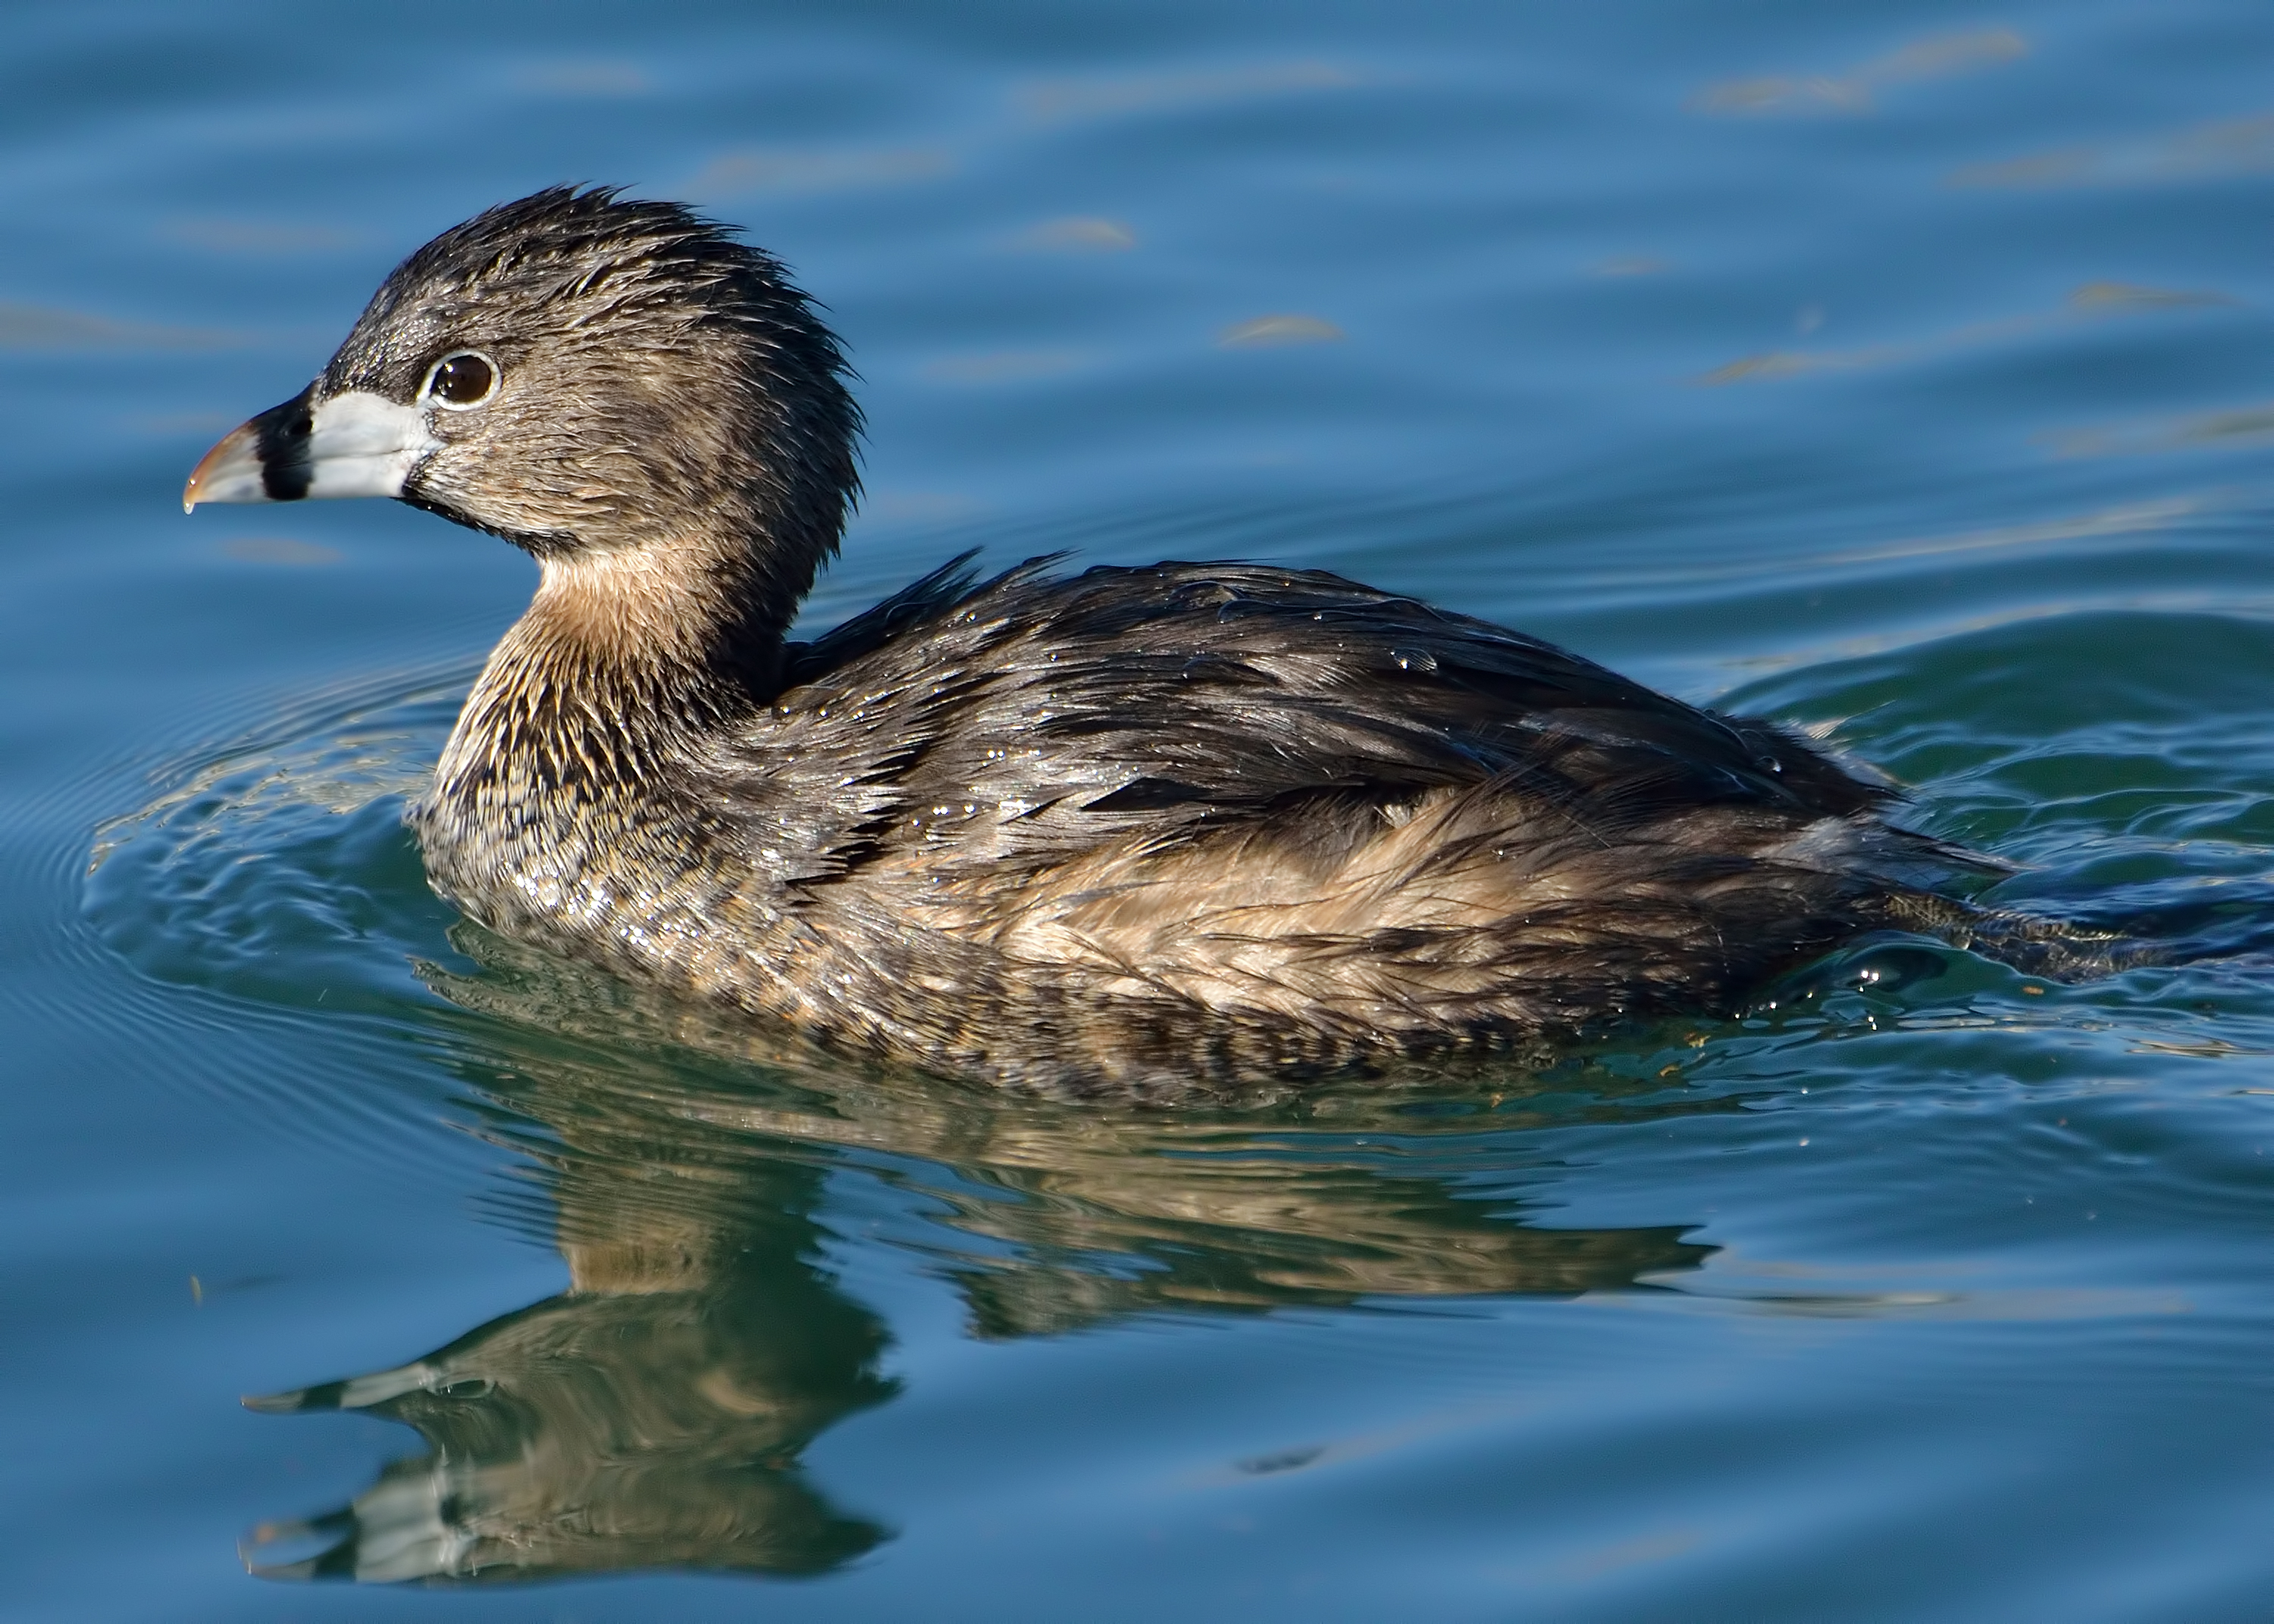 No Quack, No Waddle, No Duck - Shoal Creek Conservancy